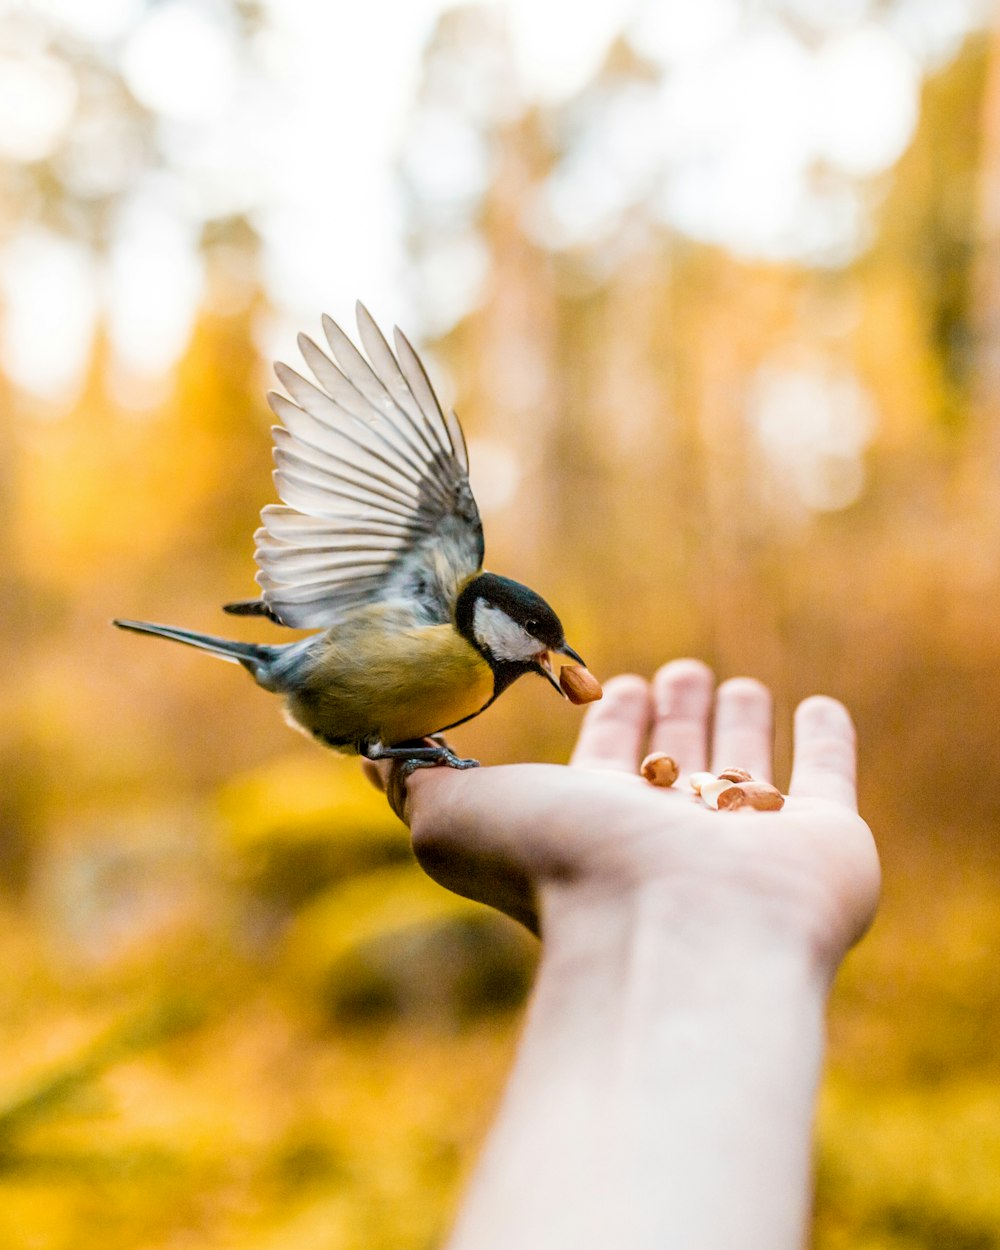 Foto del pájaro marrón y negro en la palma de la mano de la persona comiendo un alimento